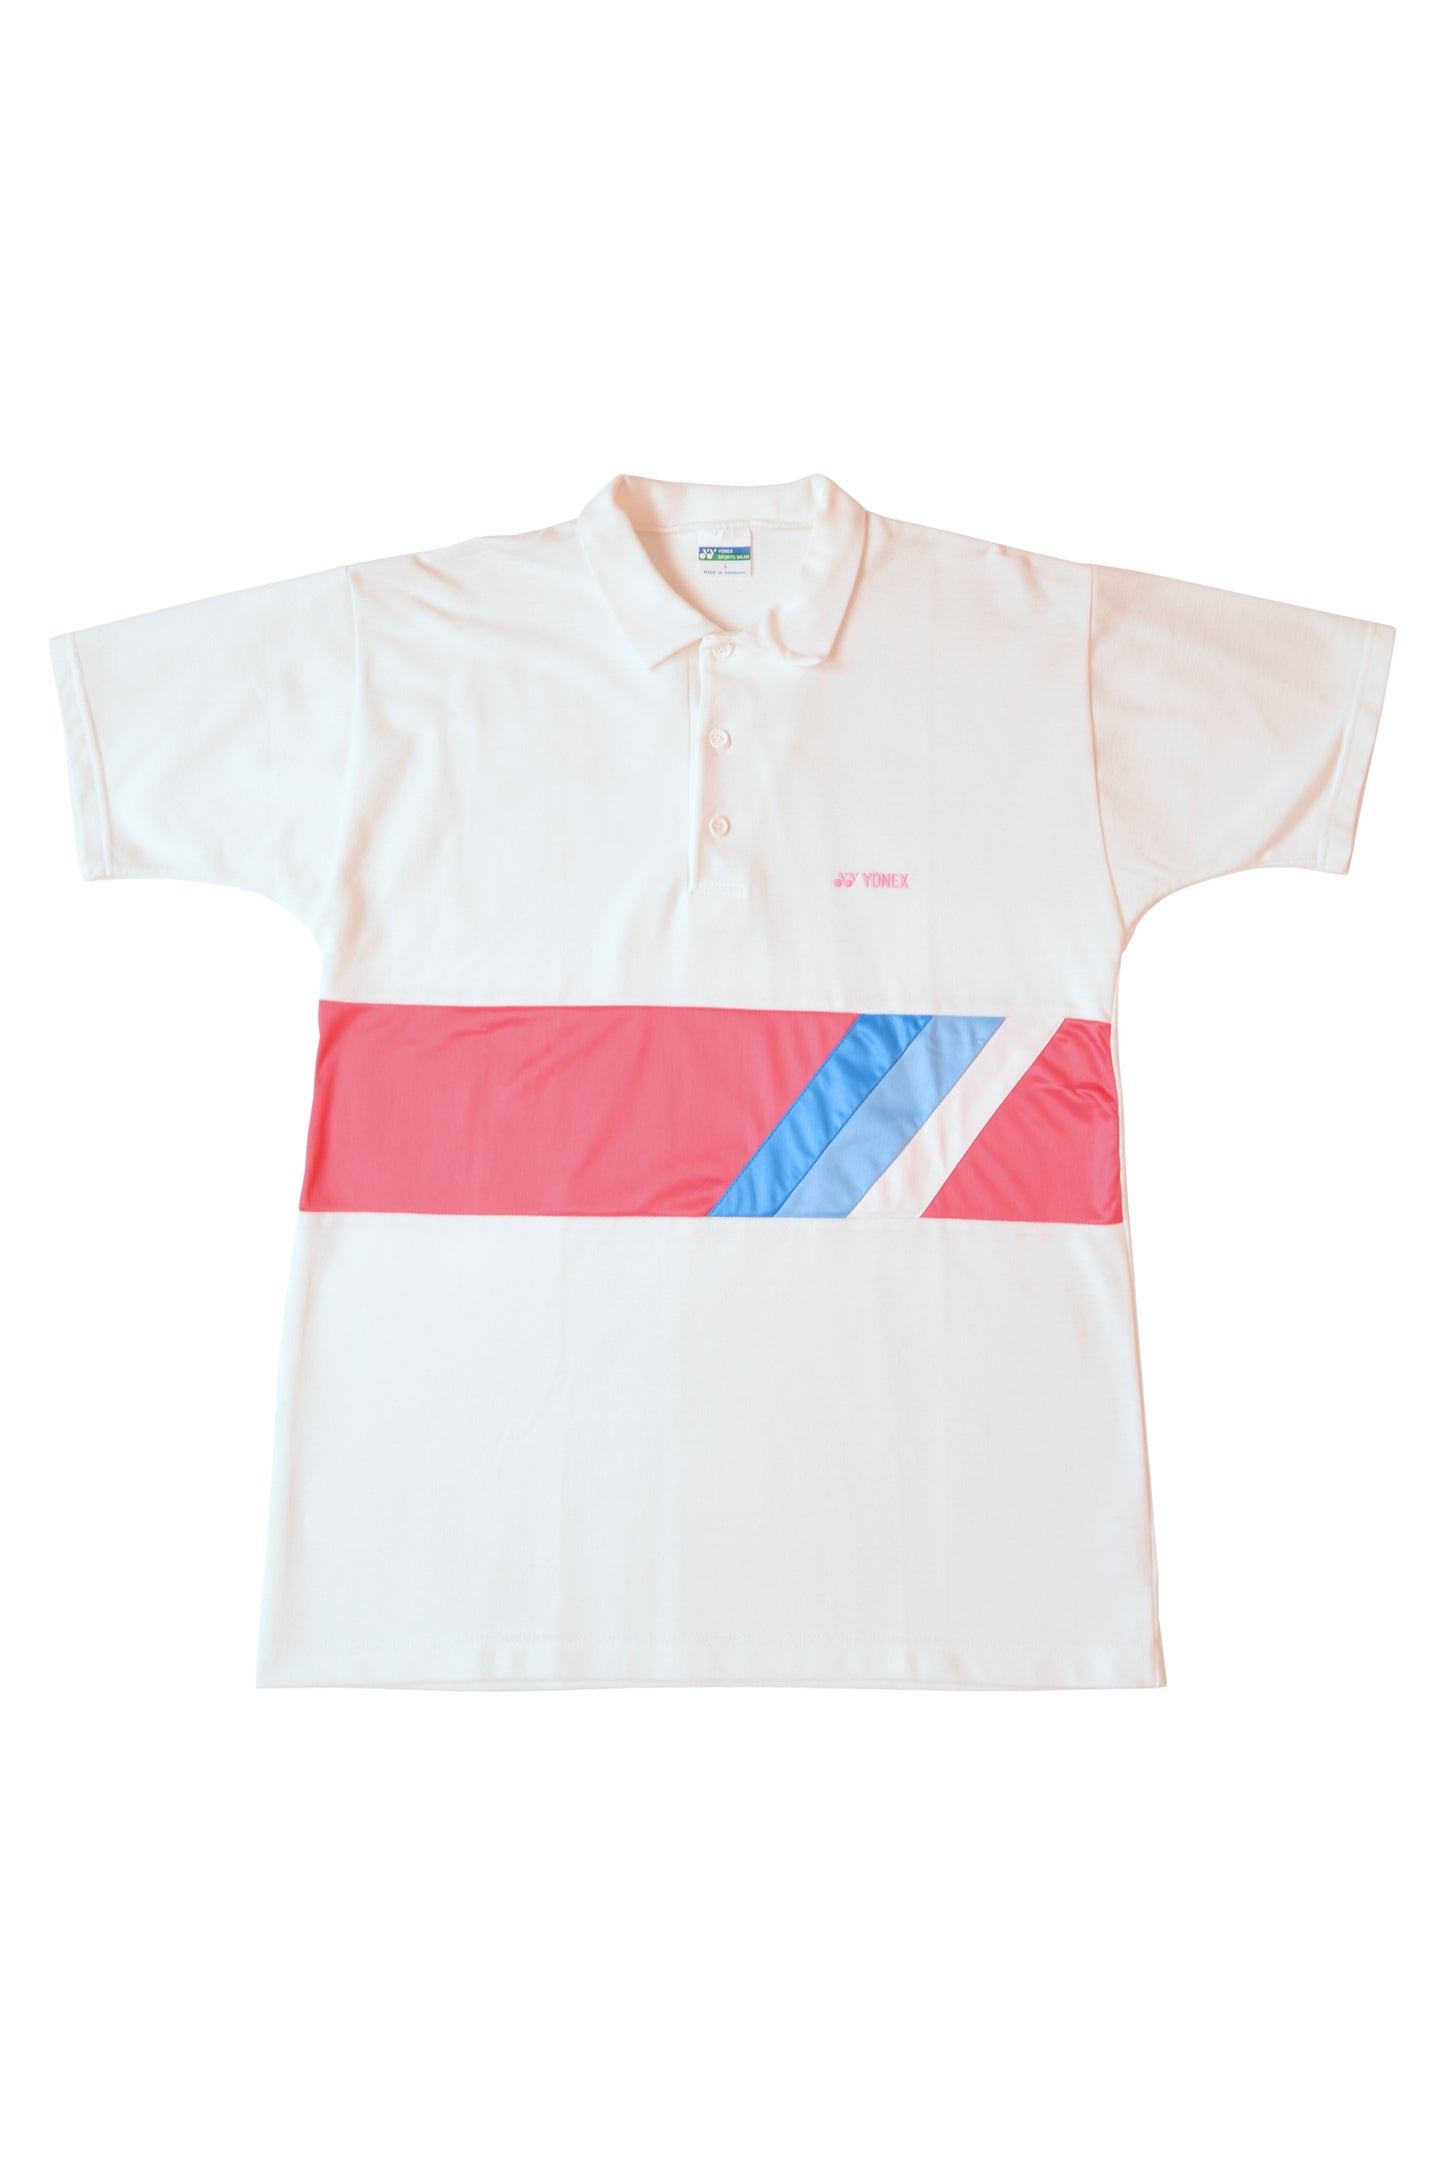 Vintage 90's Yonex Tennis Polo Shirt Made in Denmark 